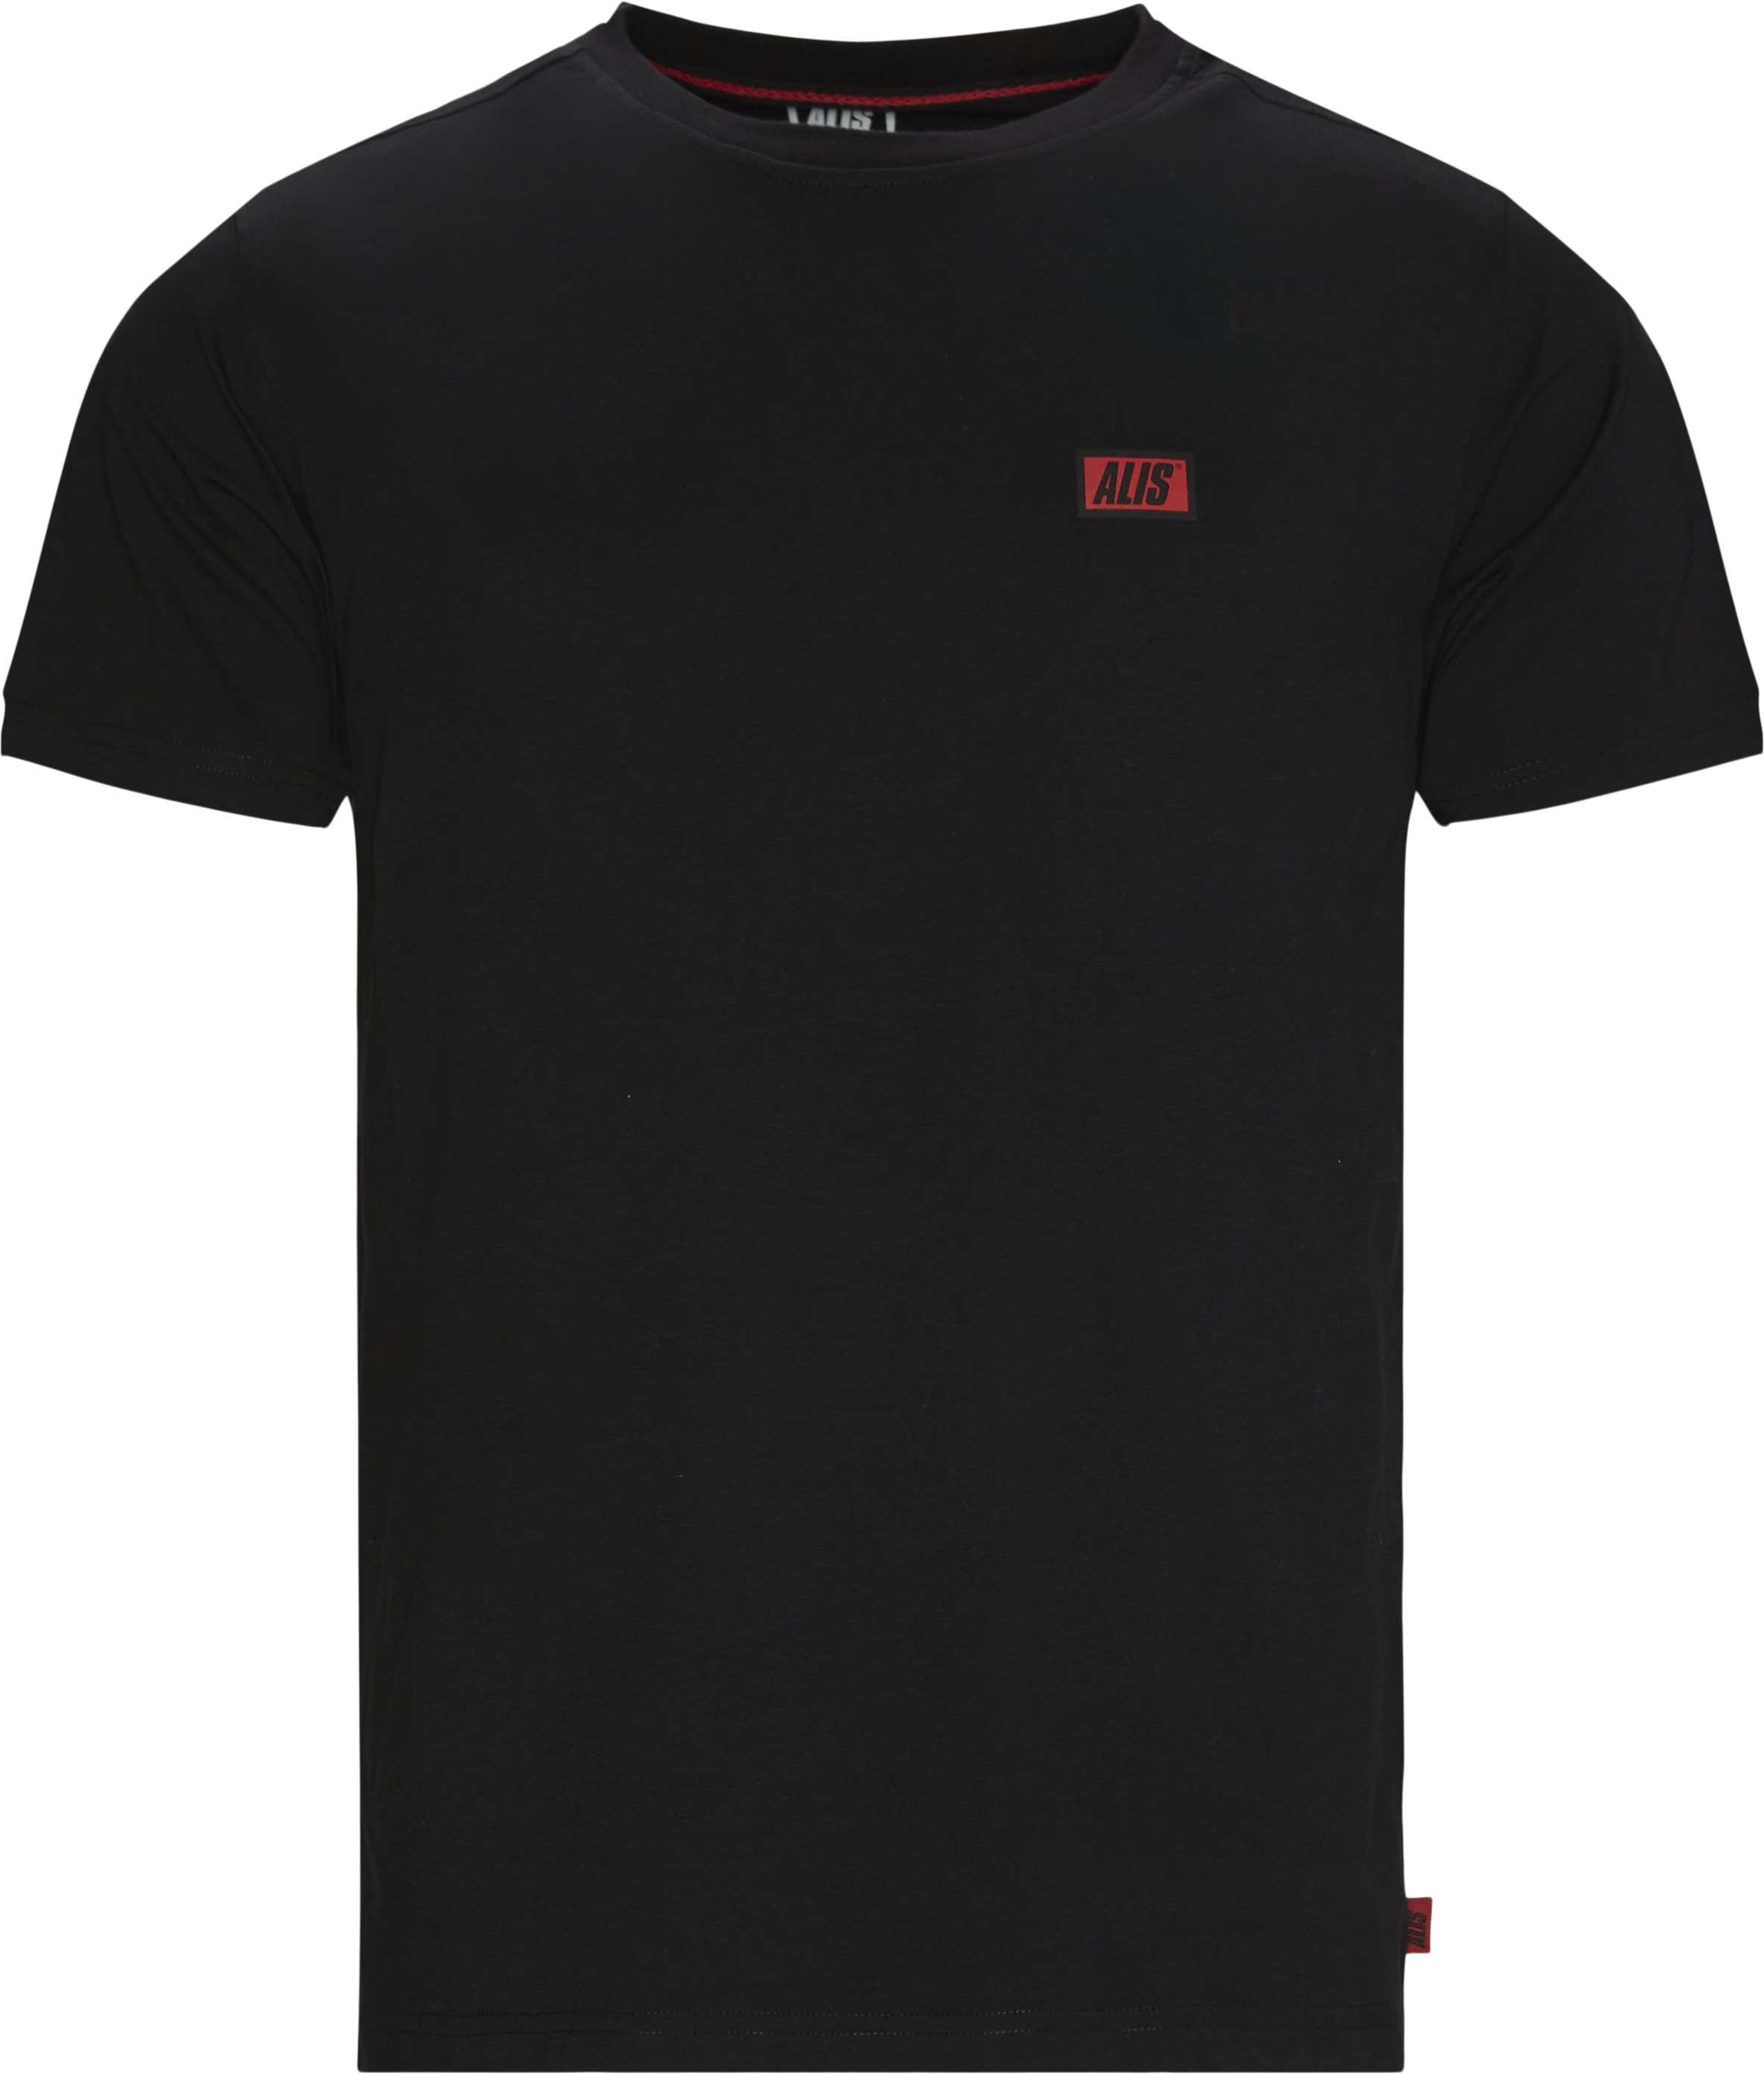 Am3001 Tee - T-shirts - Regular fit - Svart